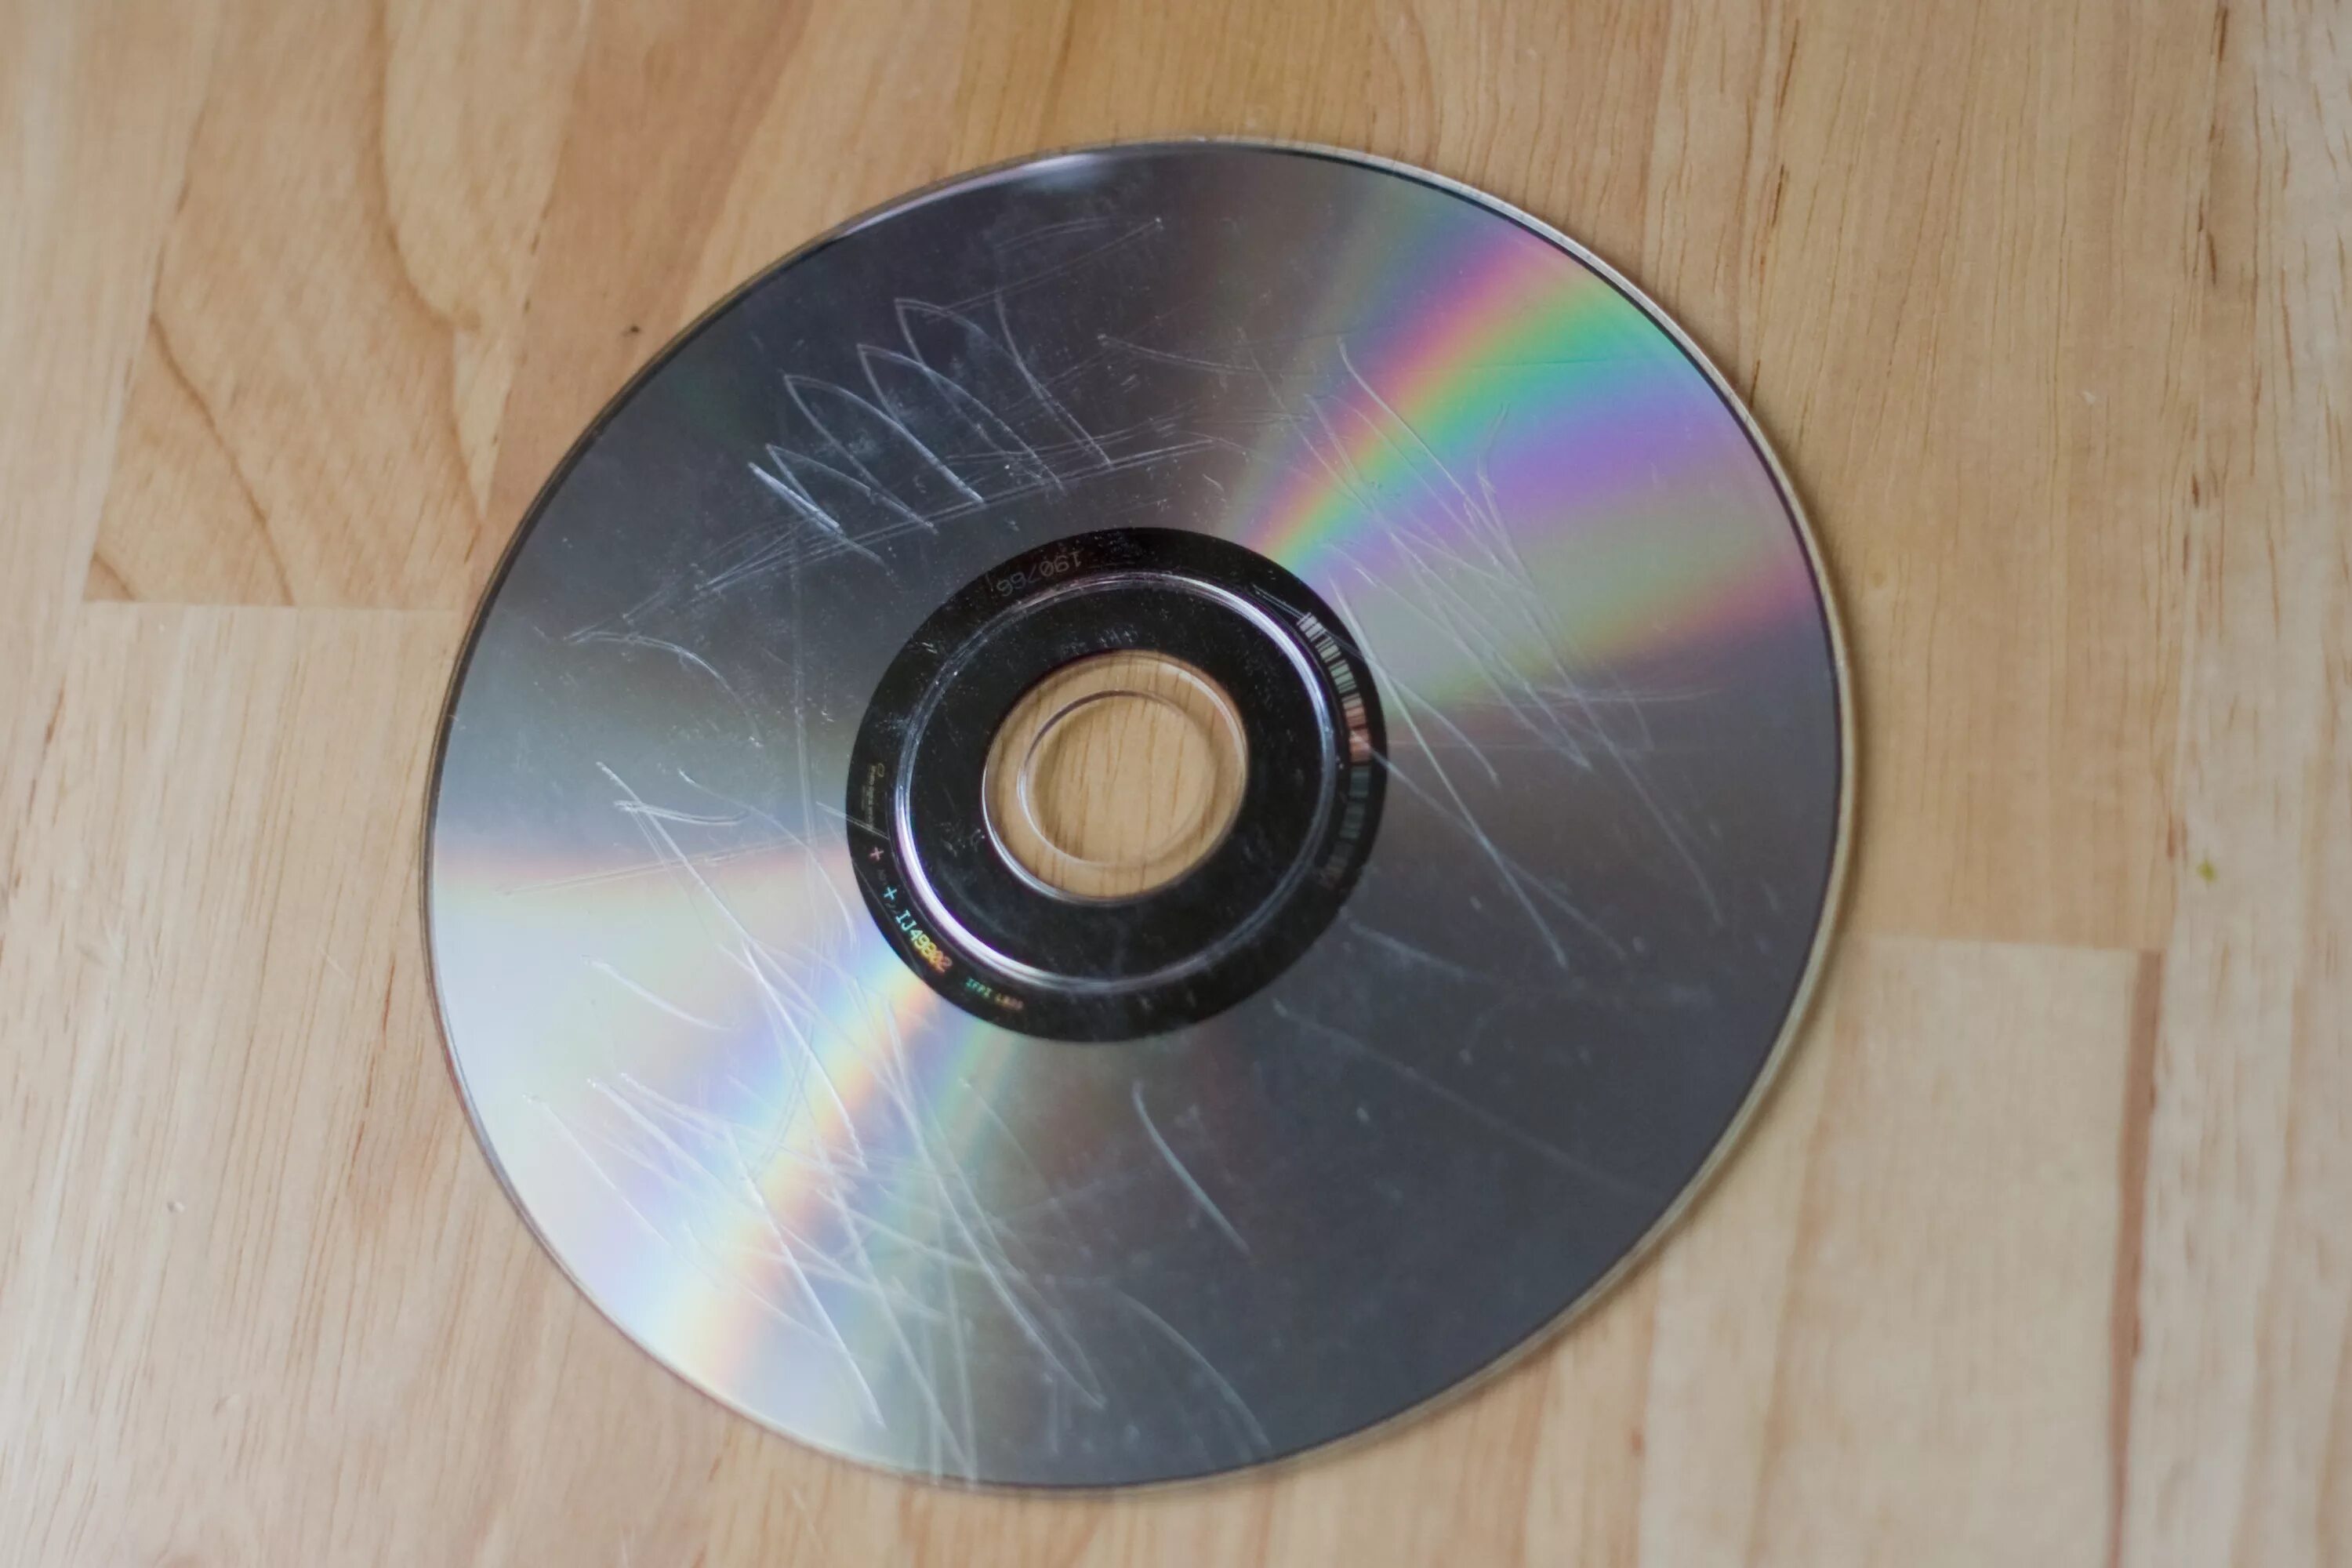 Восстановить cd. CD - Compact Disk (компакт диск). DVD-диски (DVD – Digital versatile Disk, цифровой универсальный диск),. Поцарапанный диск. Царапины на компакт диске.